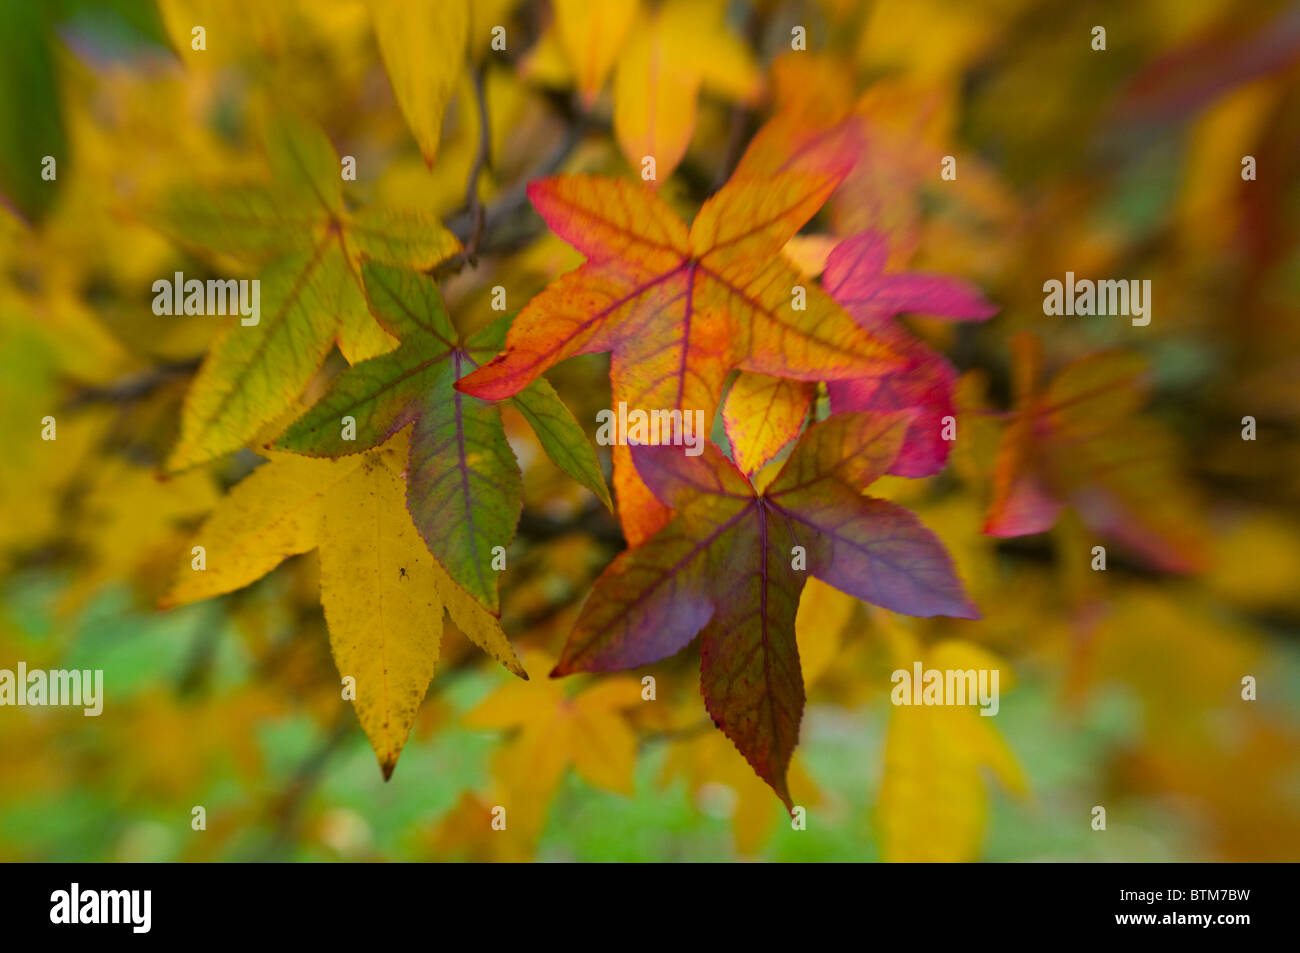 Image en gros plan de la vibrante Automne/Automne feuilles colorées de l'Acer palmatum l'érable japonais, image prise contre un arrière-plan. Banque D'Images